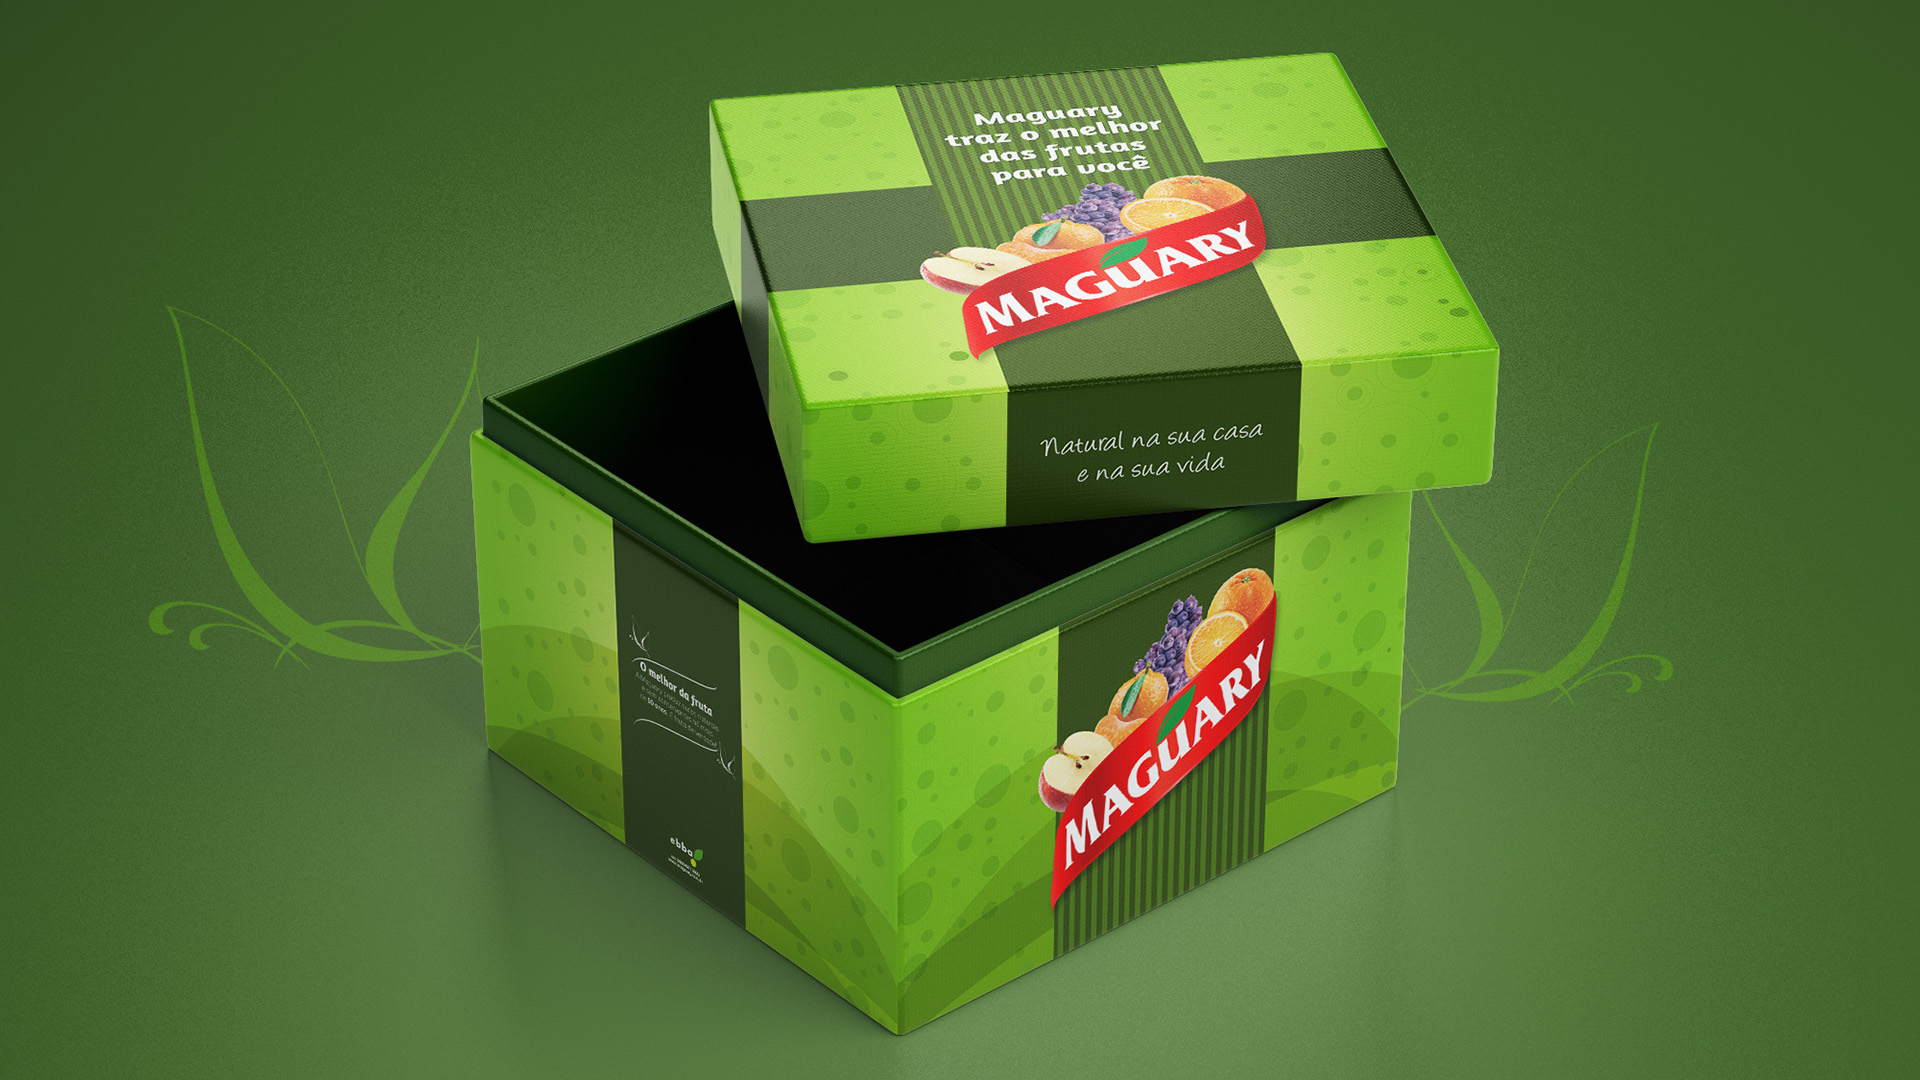 Imagem da caixa do press kit de lançamento de produtos Maguary com key visual aplicado.